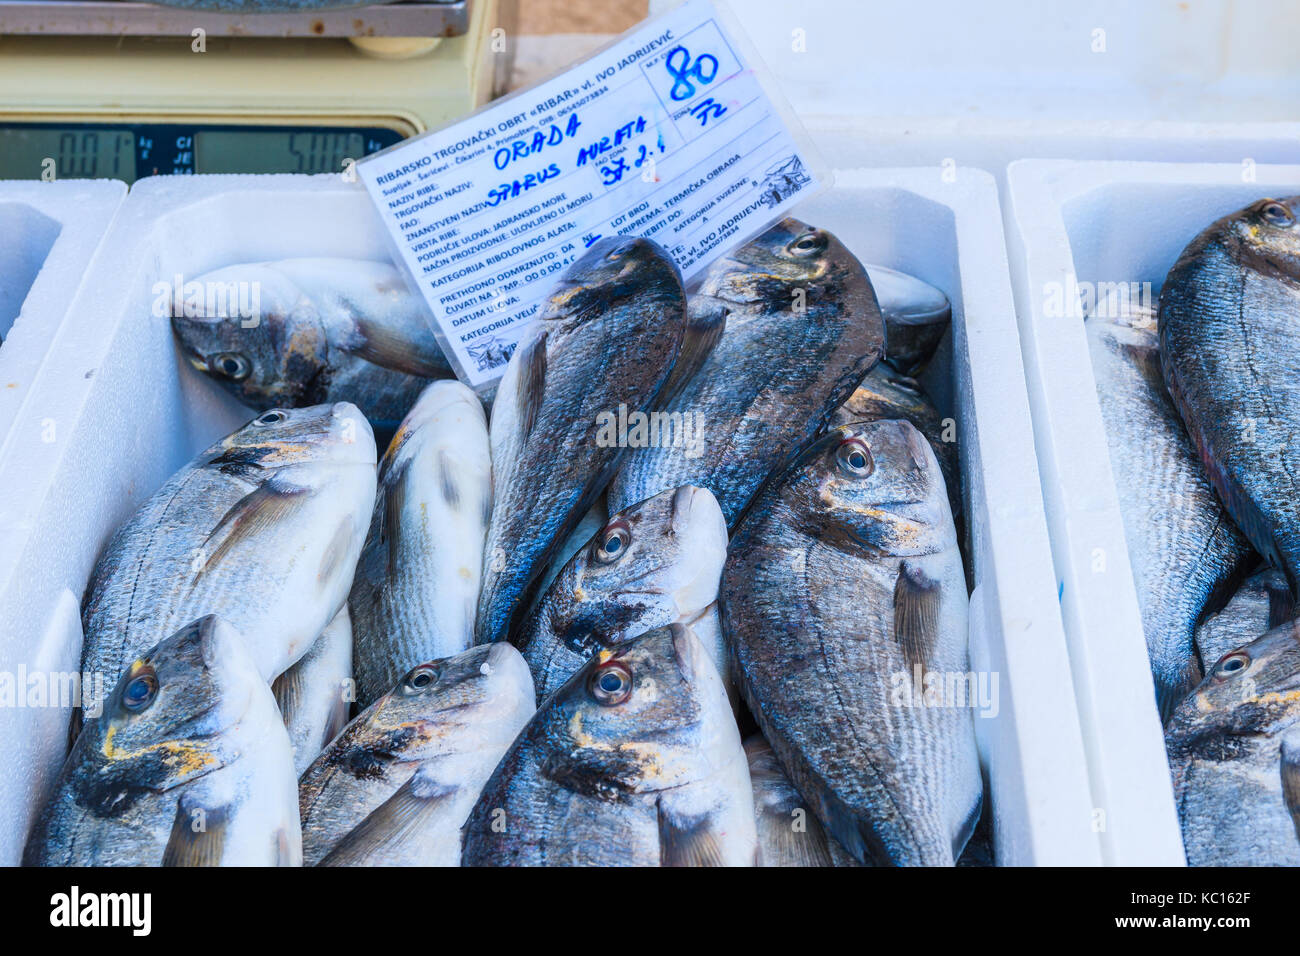 PRIMOSTEN, KROATIEN - Sep 6, 2017: Frischer Fisch in Kisten zum Verkauf in Primosten, Dalmatien, Kroatien. Stockfoto